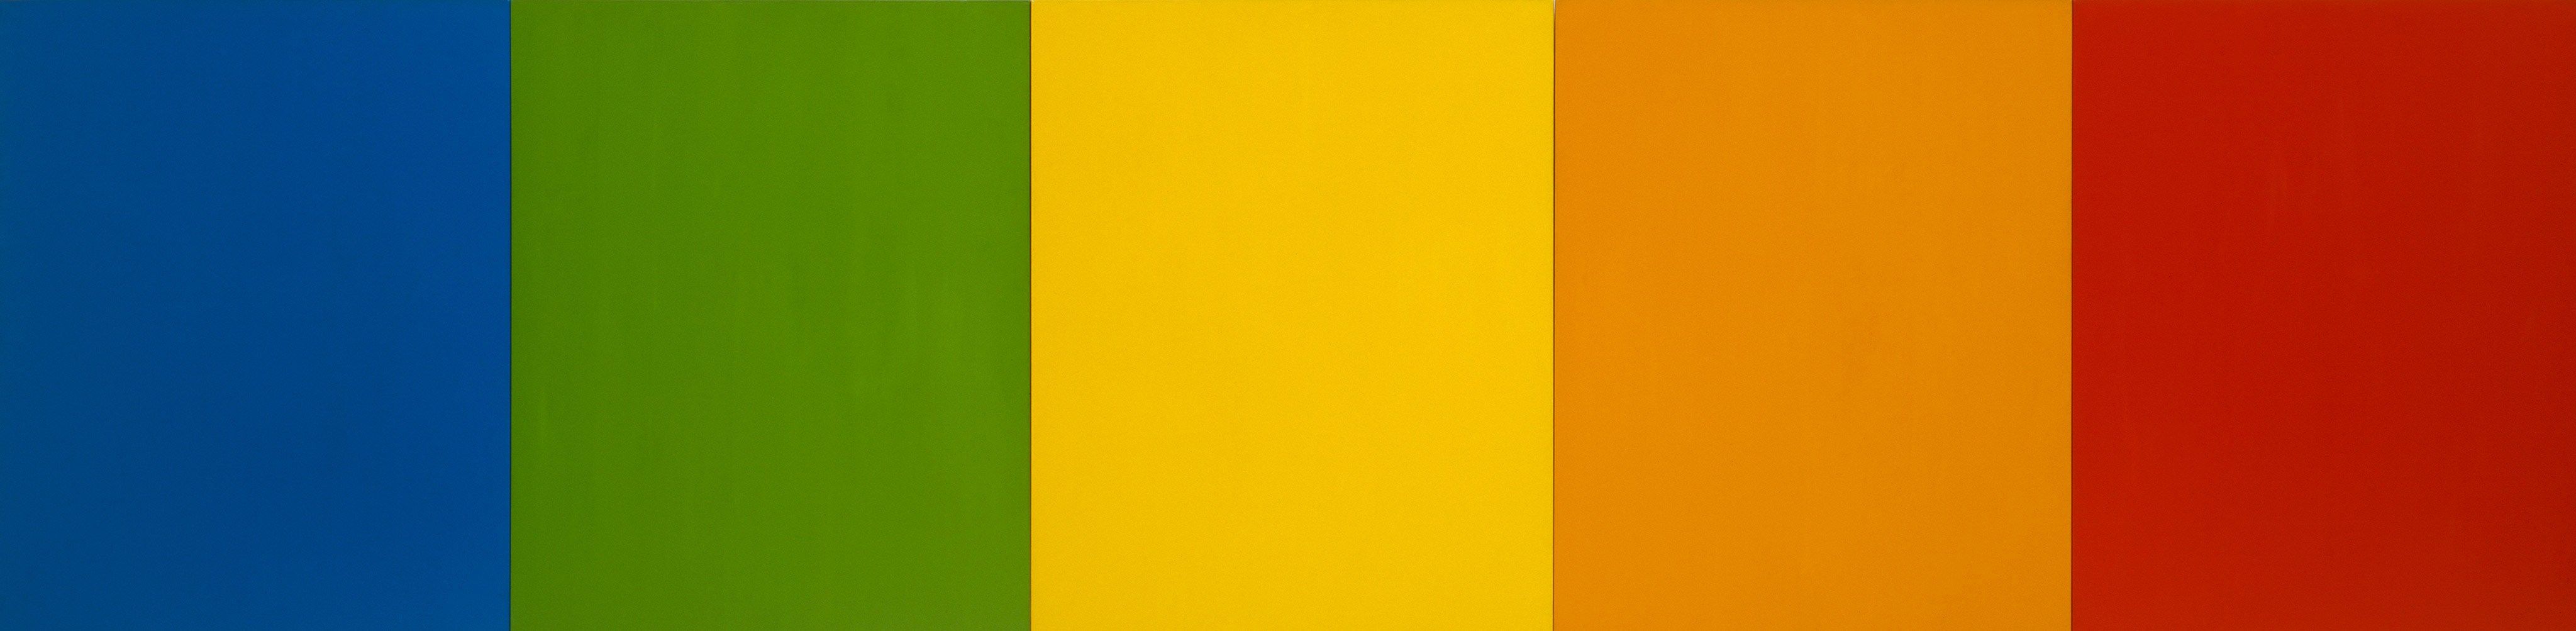 Красное и зеленое читать. Эльсуорт Келли, «красный, желтый, синий II» (1953). «Красный, желтый, синий II» Эльсуорт Келли. Красный оранжевый желтый зеленый синий. Зеленый оранжевый синий белый.